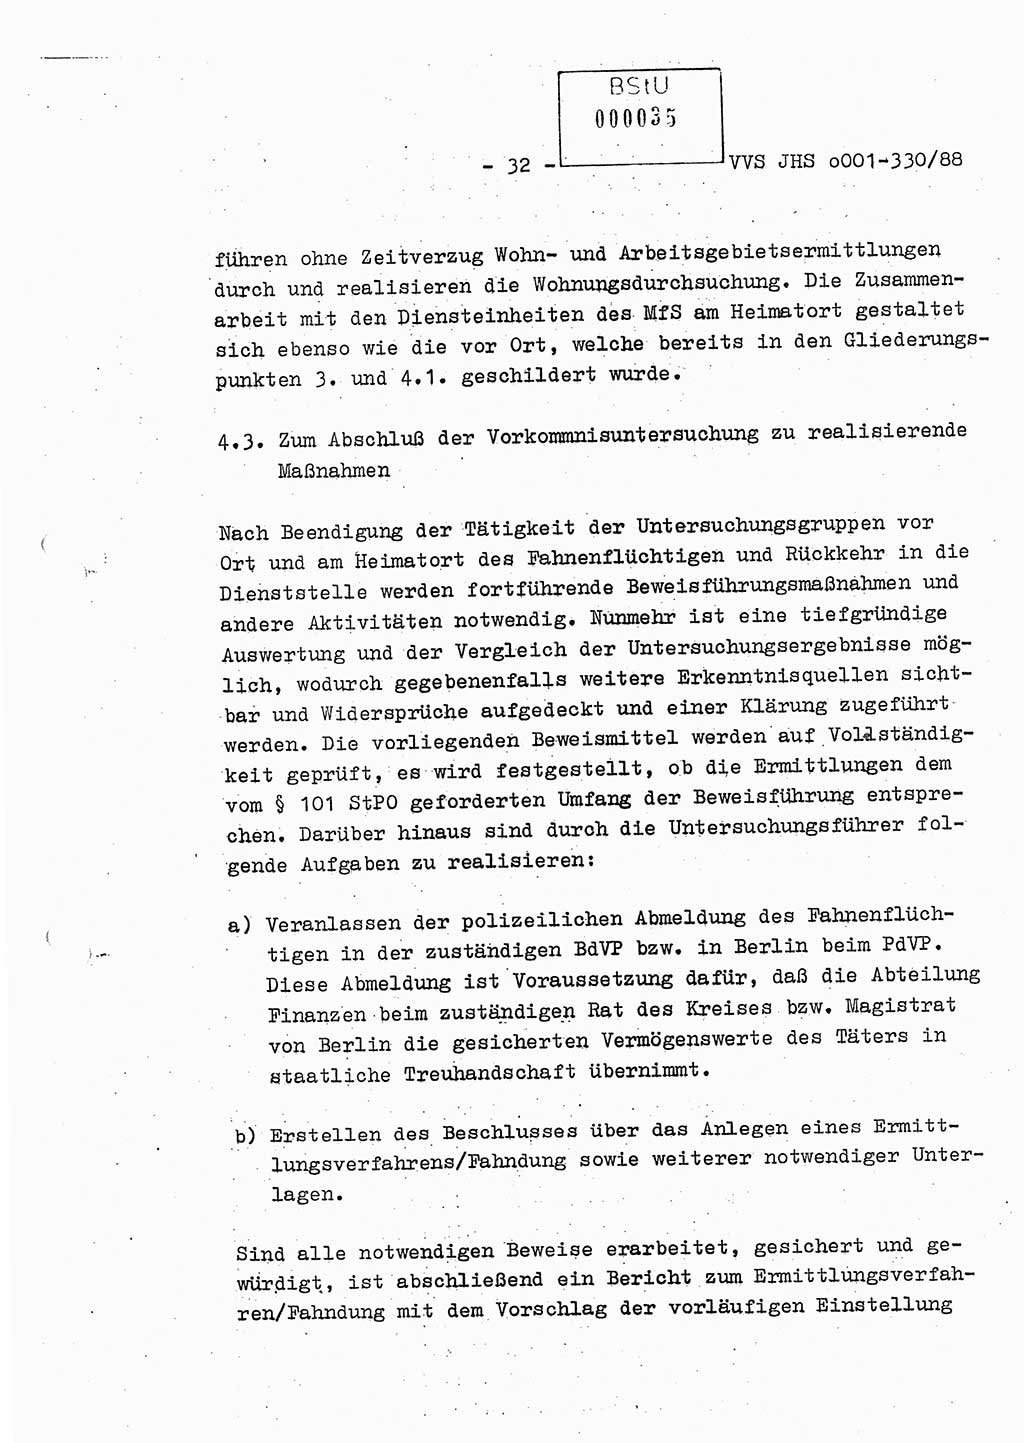 Diplomarbeit Offiziersschüler Thomas Mühle (HA Ⅸ/6), Ministerium für Staatssicherheit (MfS) [Deutsche Demokratische Republik (DDR)], Juristische Hochschule (JHS), Vertrauliche Verschlußsache (VVS) o001-330/88, Potsdam 1988, Seite 32 (Dipl.-Arb. MfS DDR JHS VVS o001-330/88 1988, S. 32)